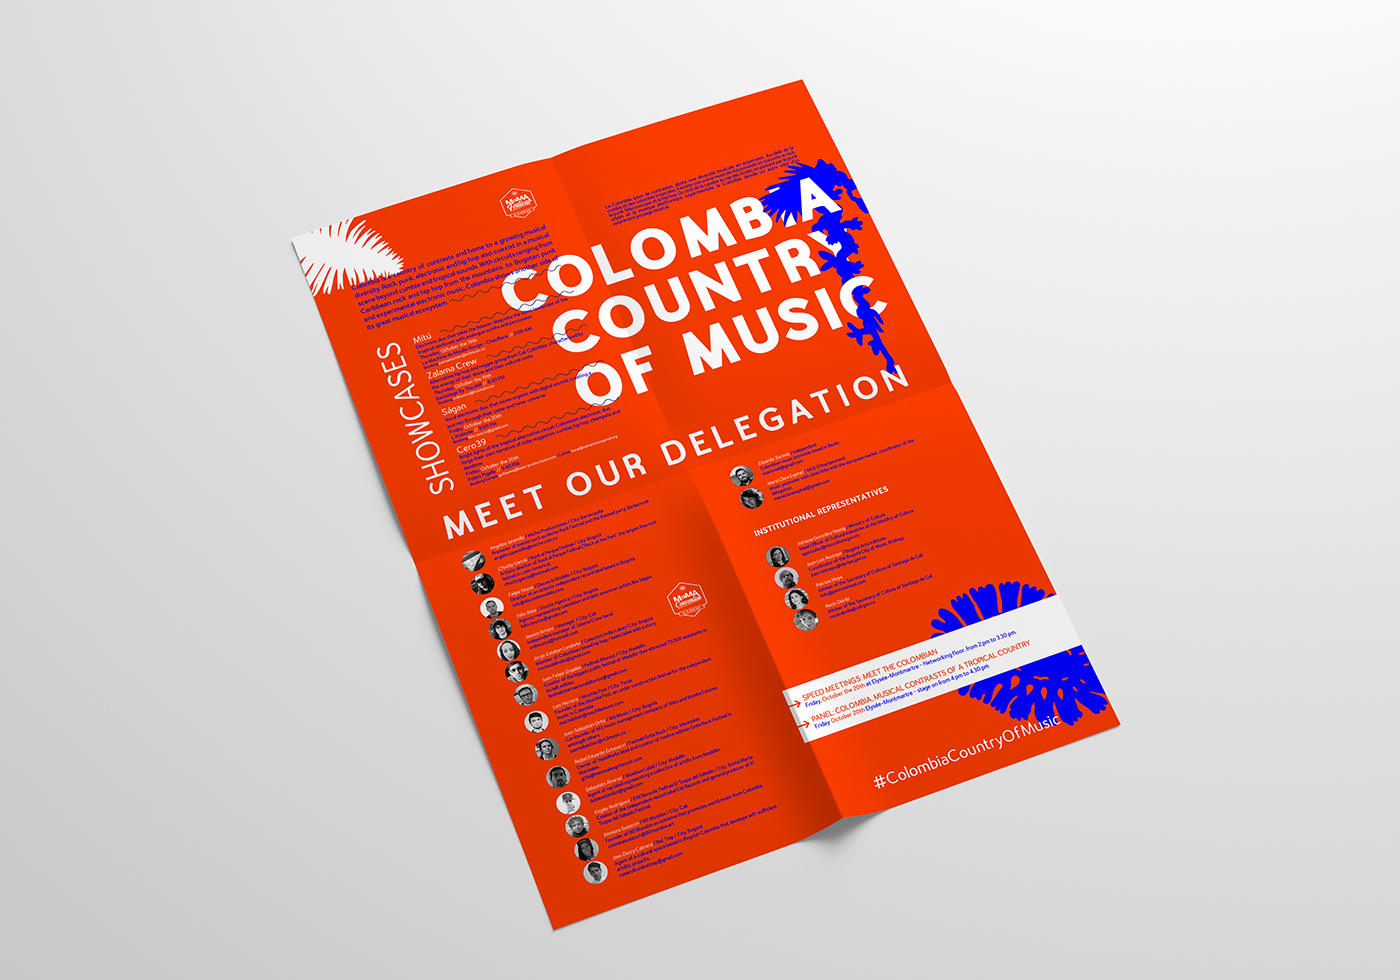 Mateo Rivano david espinosa Type Sailor Poster Design type design visual art colombia Mama france editorial design 